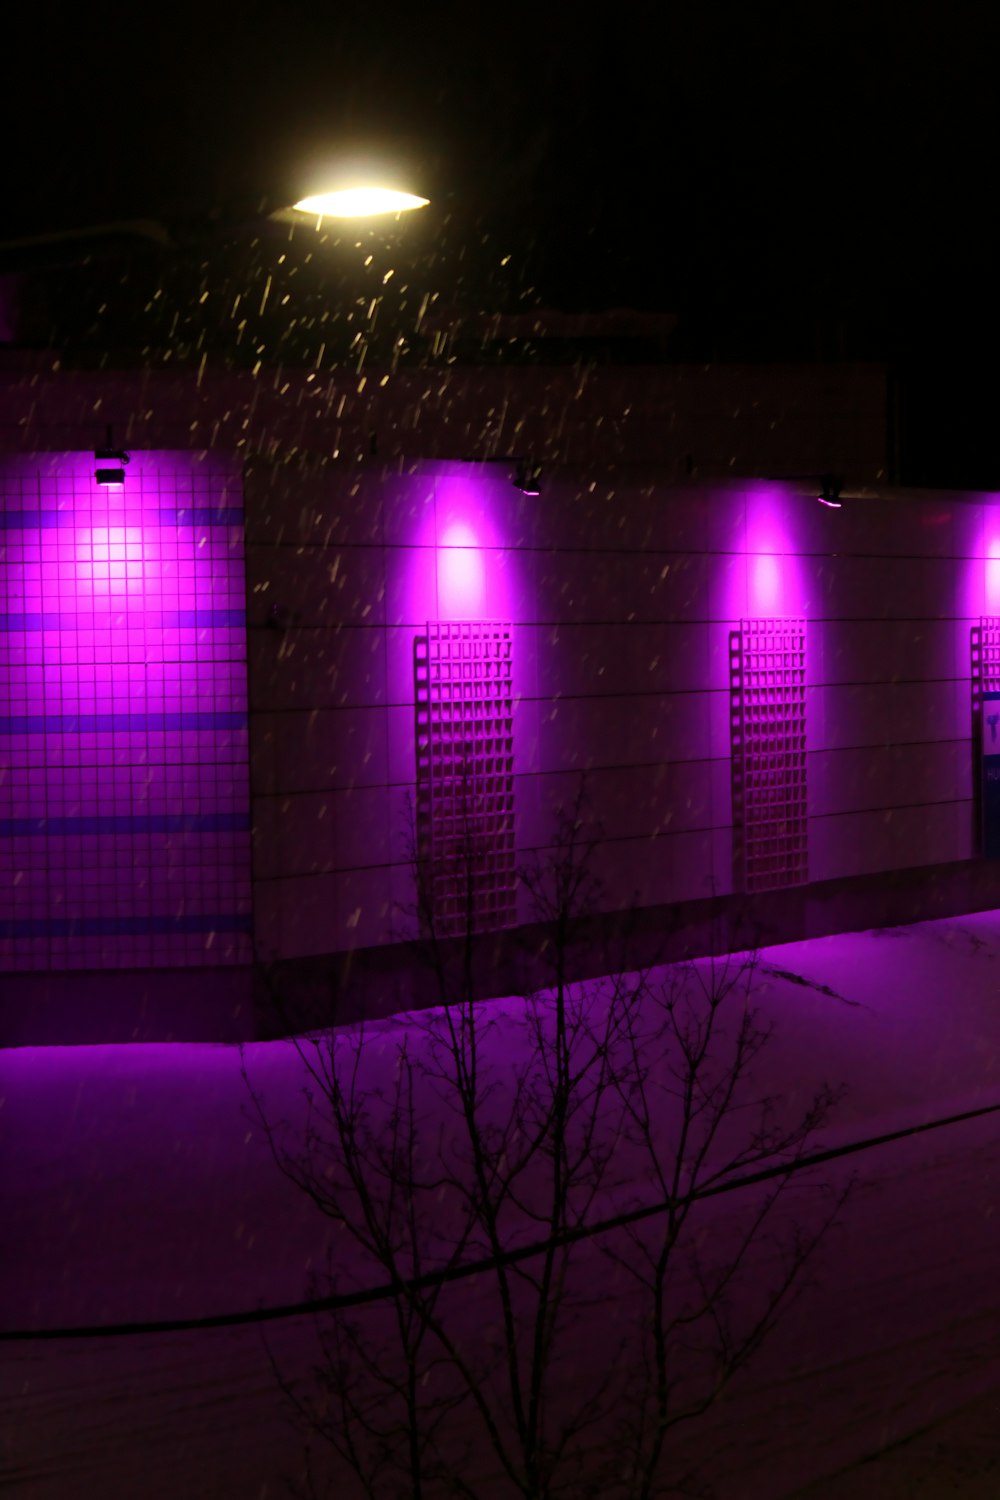 purple light on a dark room